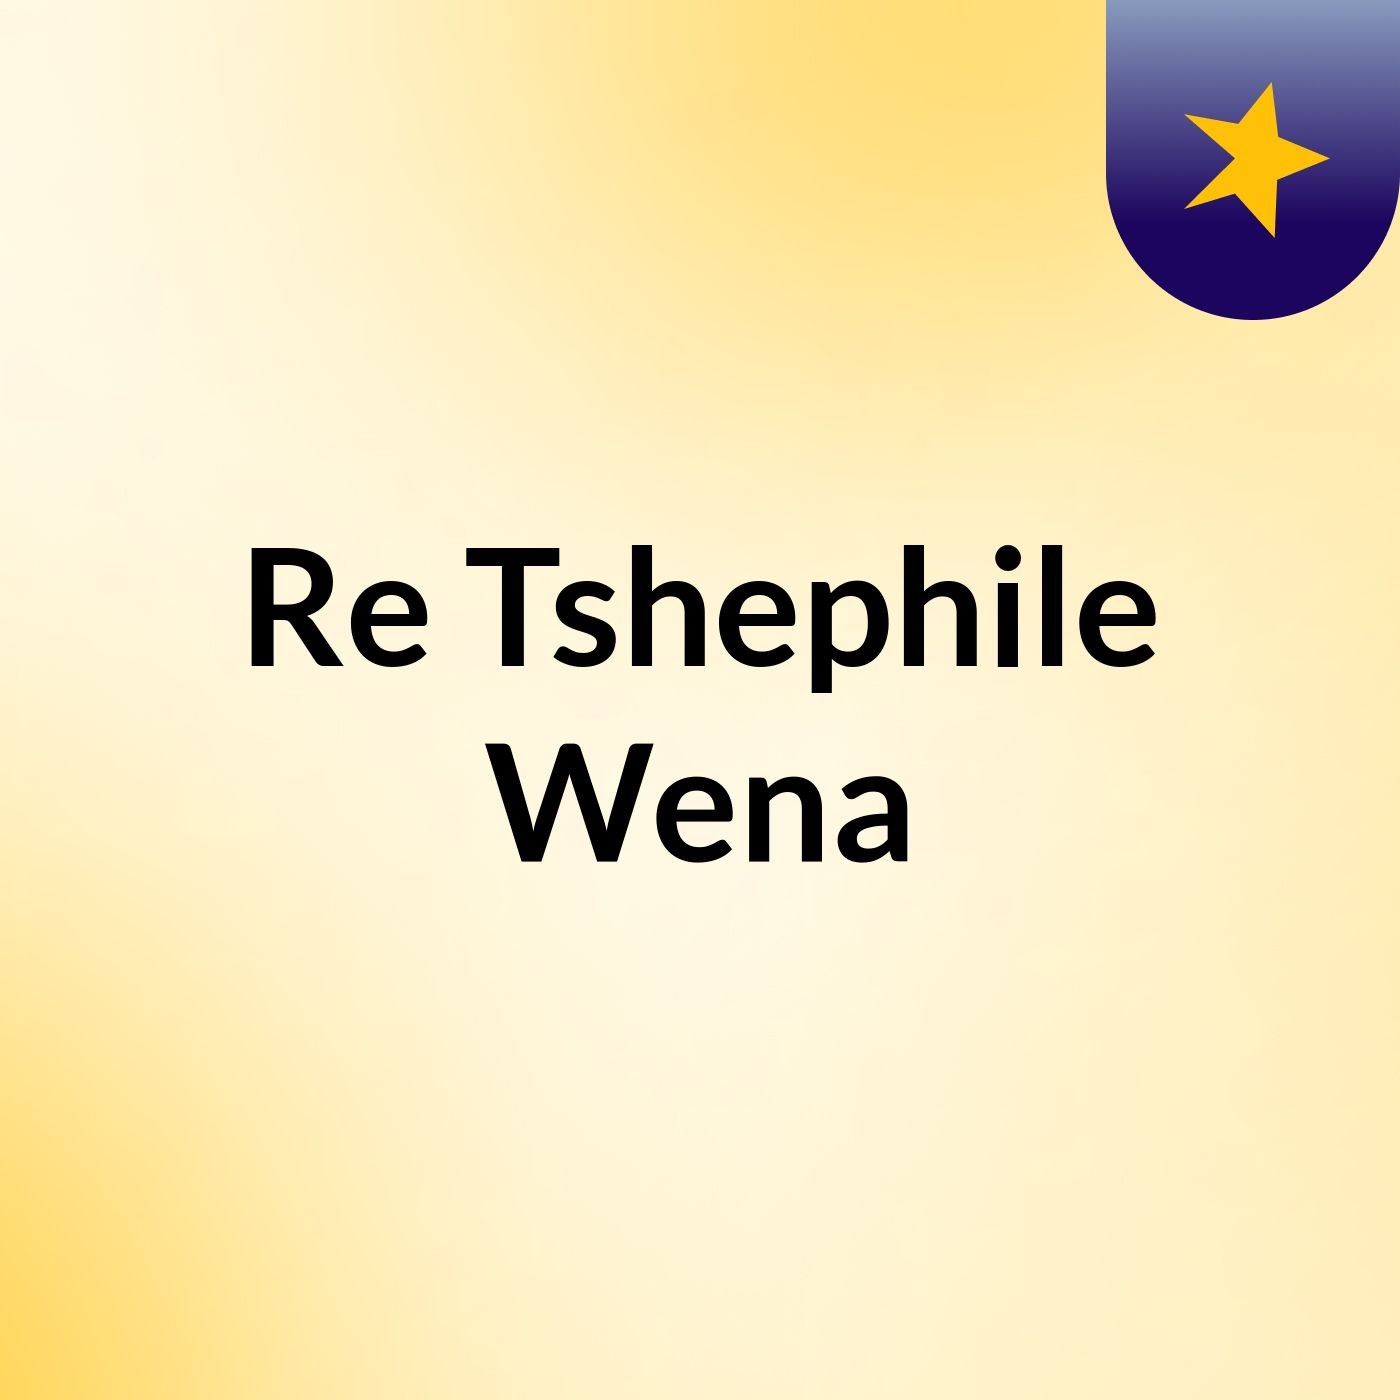 Re Tshephile Wena